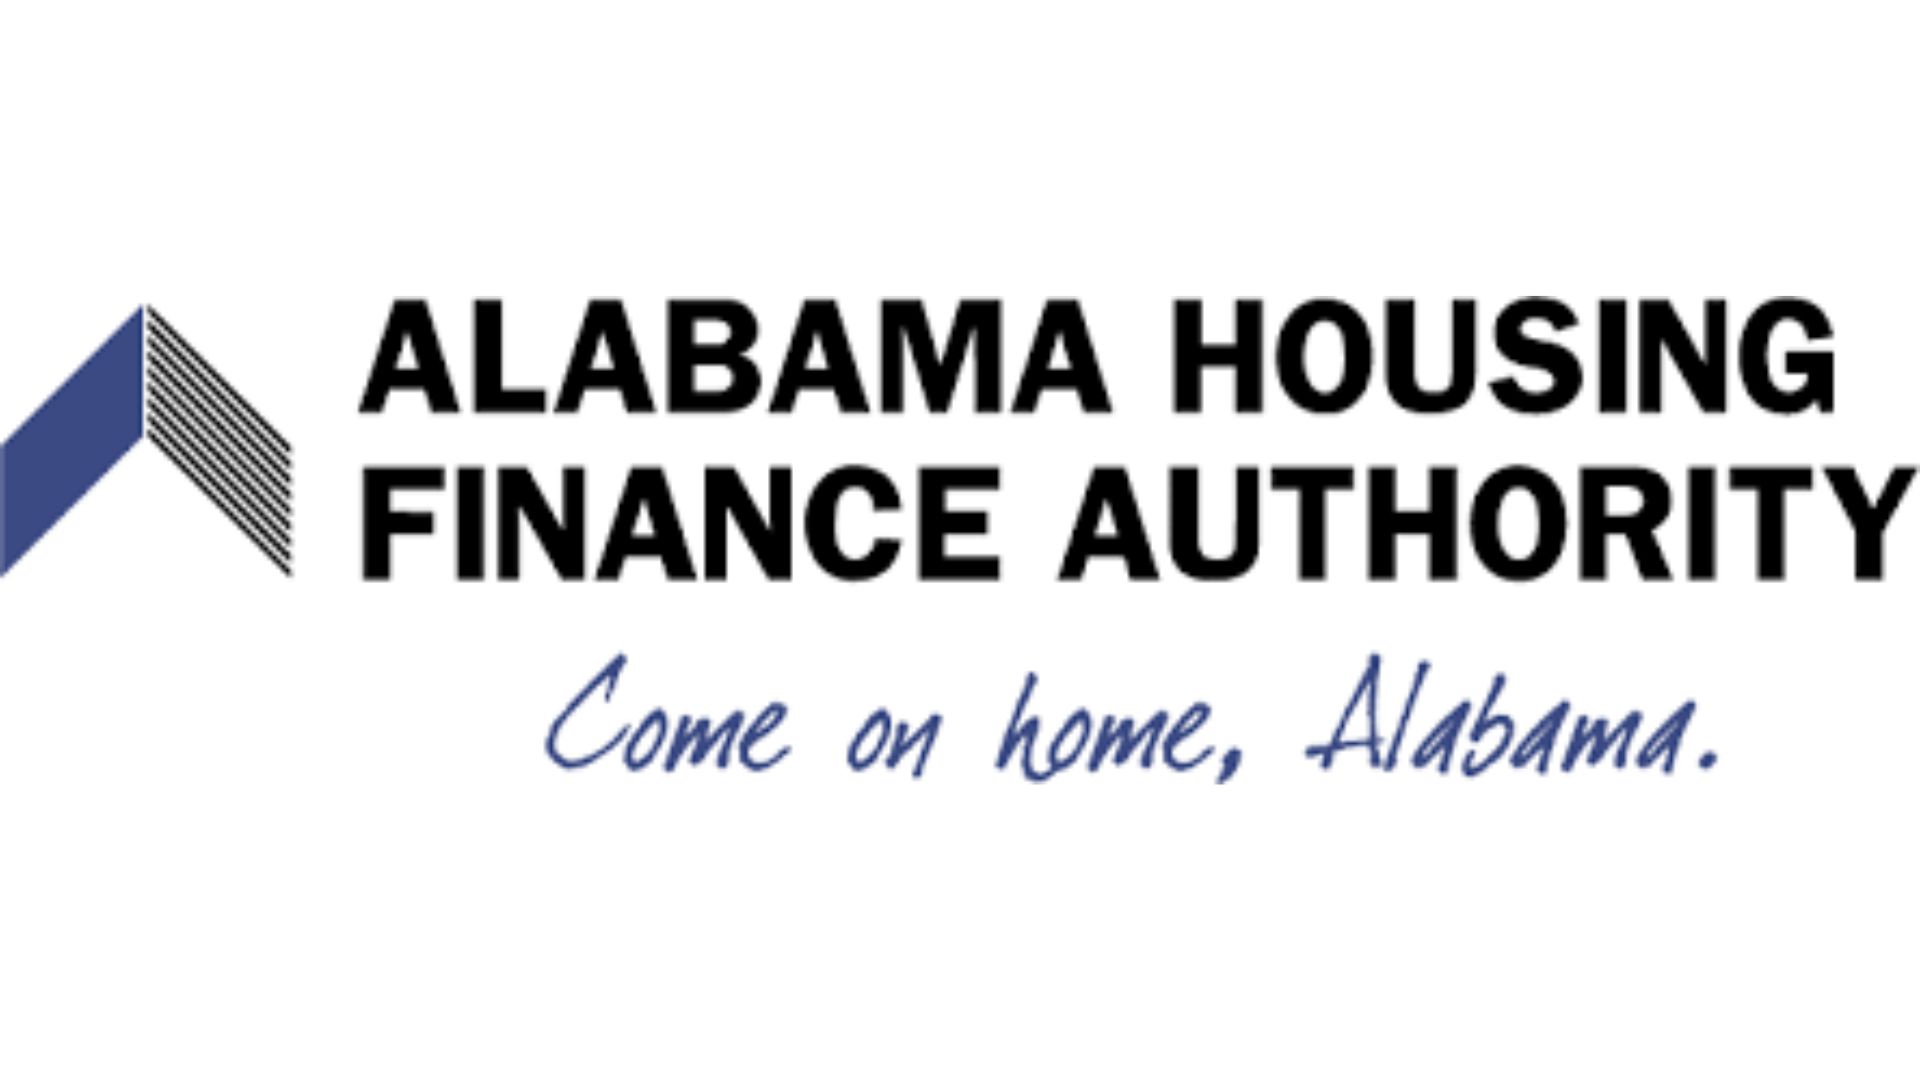 Alabama Housing Finance Authority.